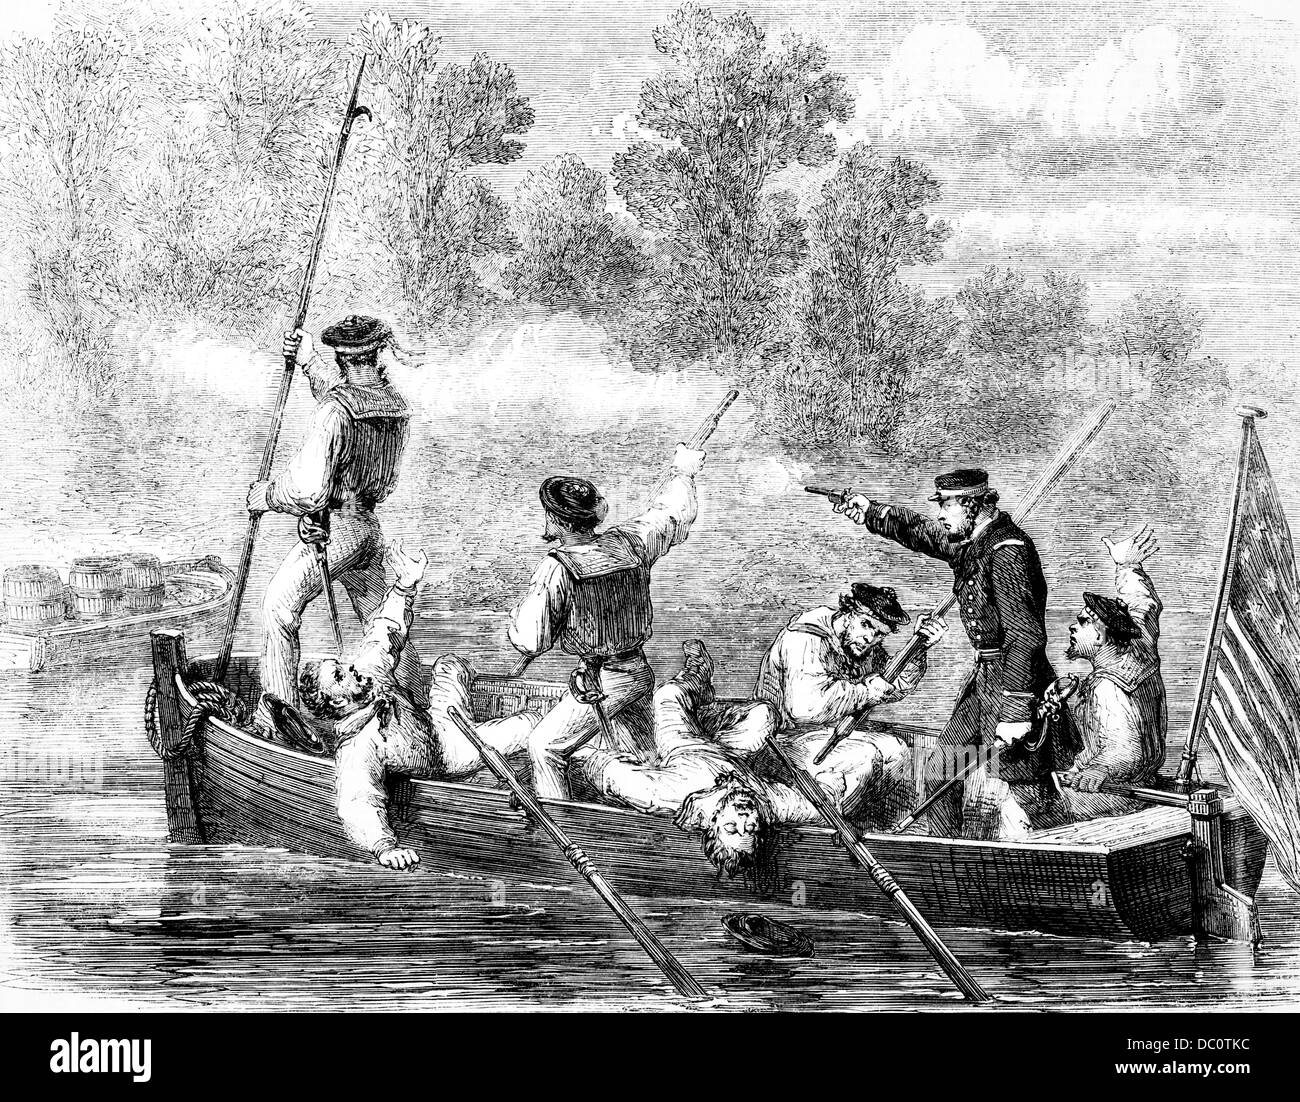 1800 1860 La tripulación de la flota europea de Potomac defenderse de los soldados confederados escondidos A LO LARGO DE LA ORILLA DEL RÍO Foto de stock